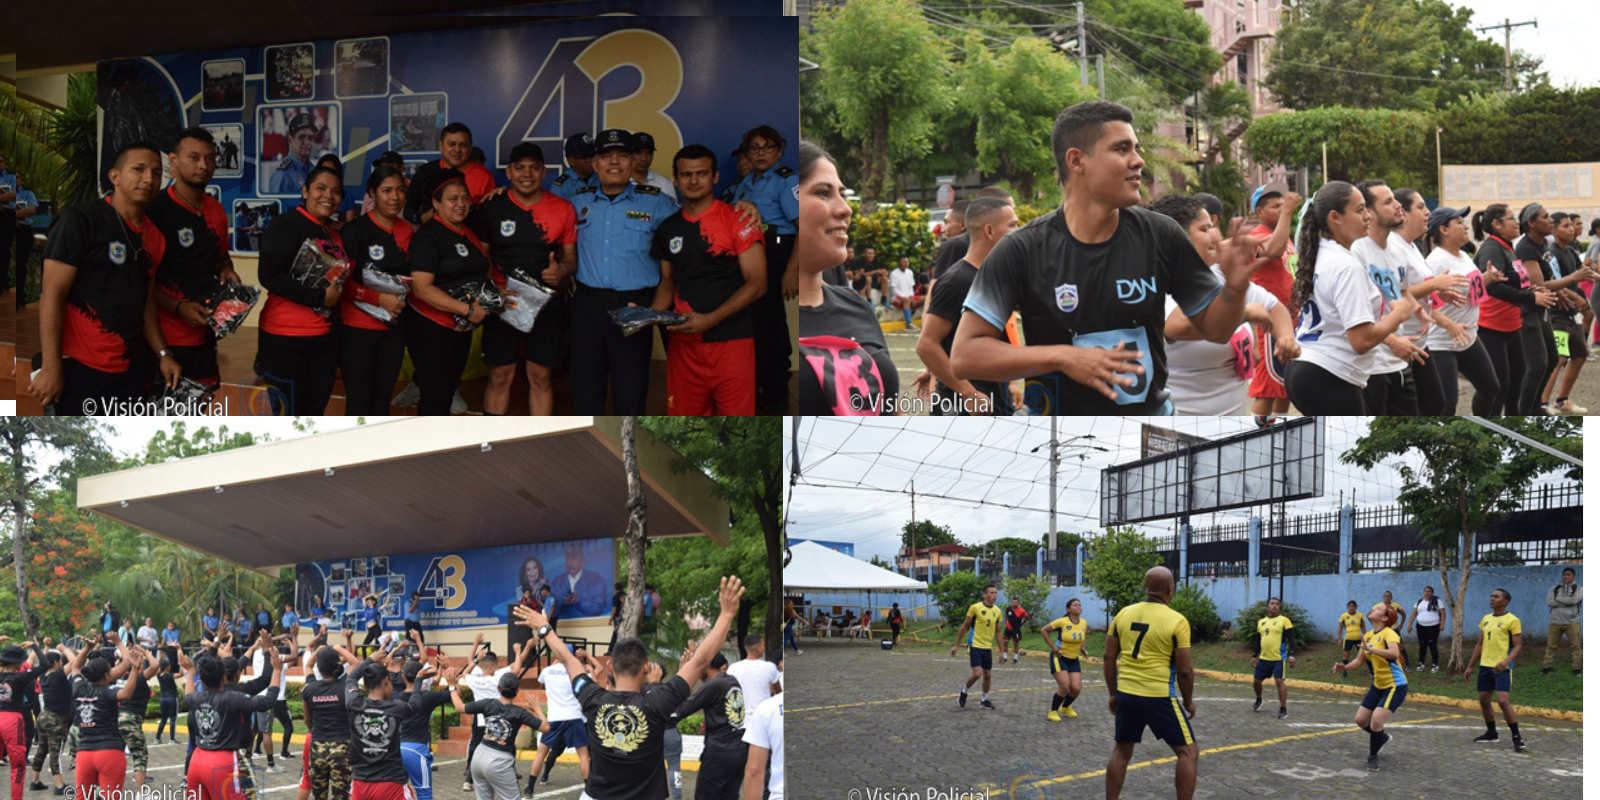 En el Complejo Policial Faustino Ruiz o Plaza El Sol, la policía al servicio de Daniel Ortega celebró el día de la alegría con actividades deportivas y culturales